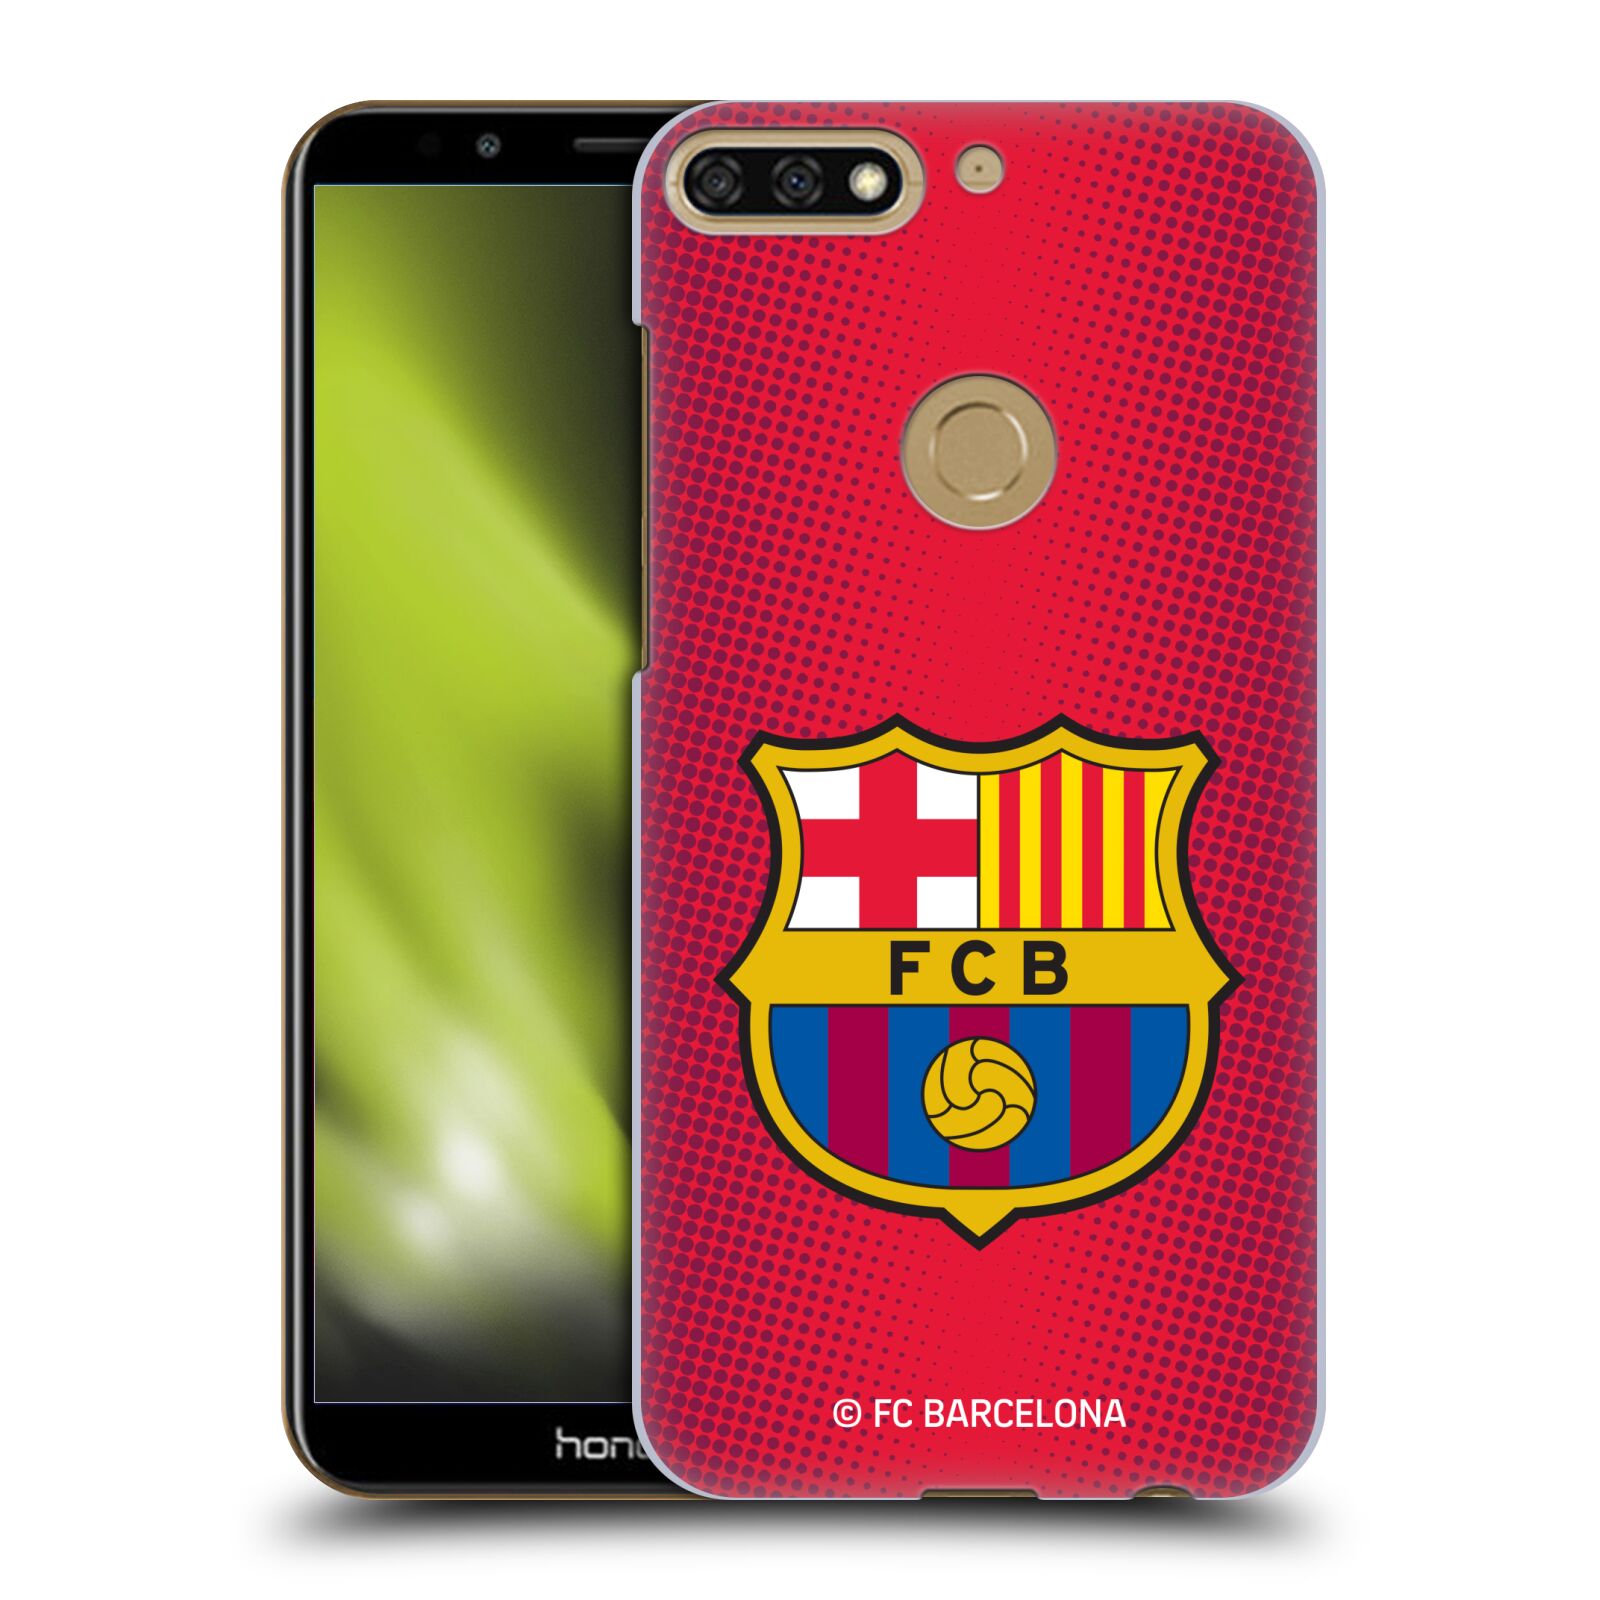 Obal na mobil HONOR 7C - HEAD CASE - FC BARCELONA - Velký znak červená a modrá